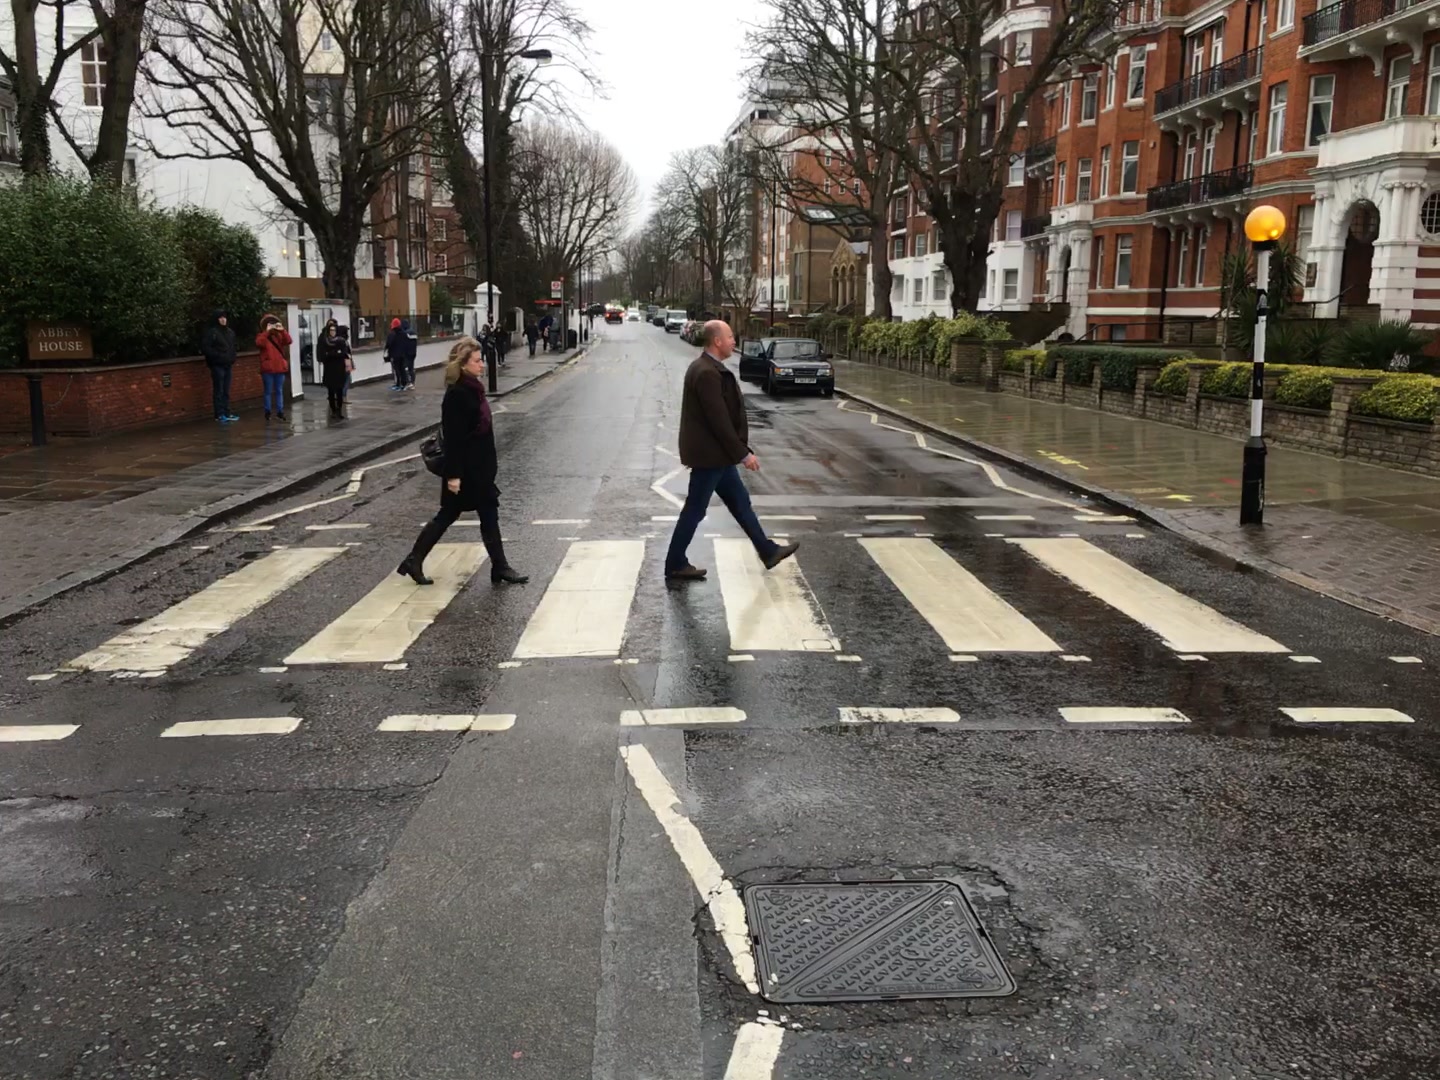 S&D Abbey Road